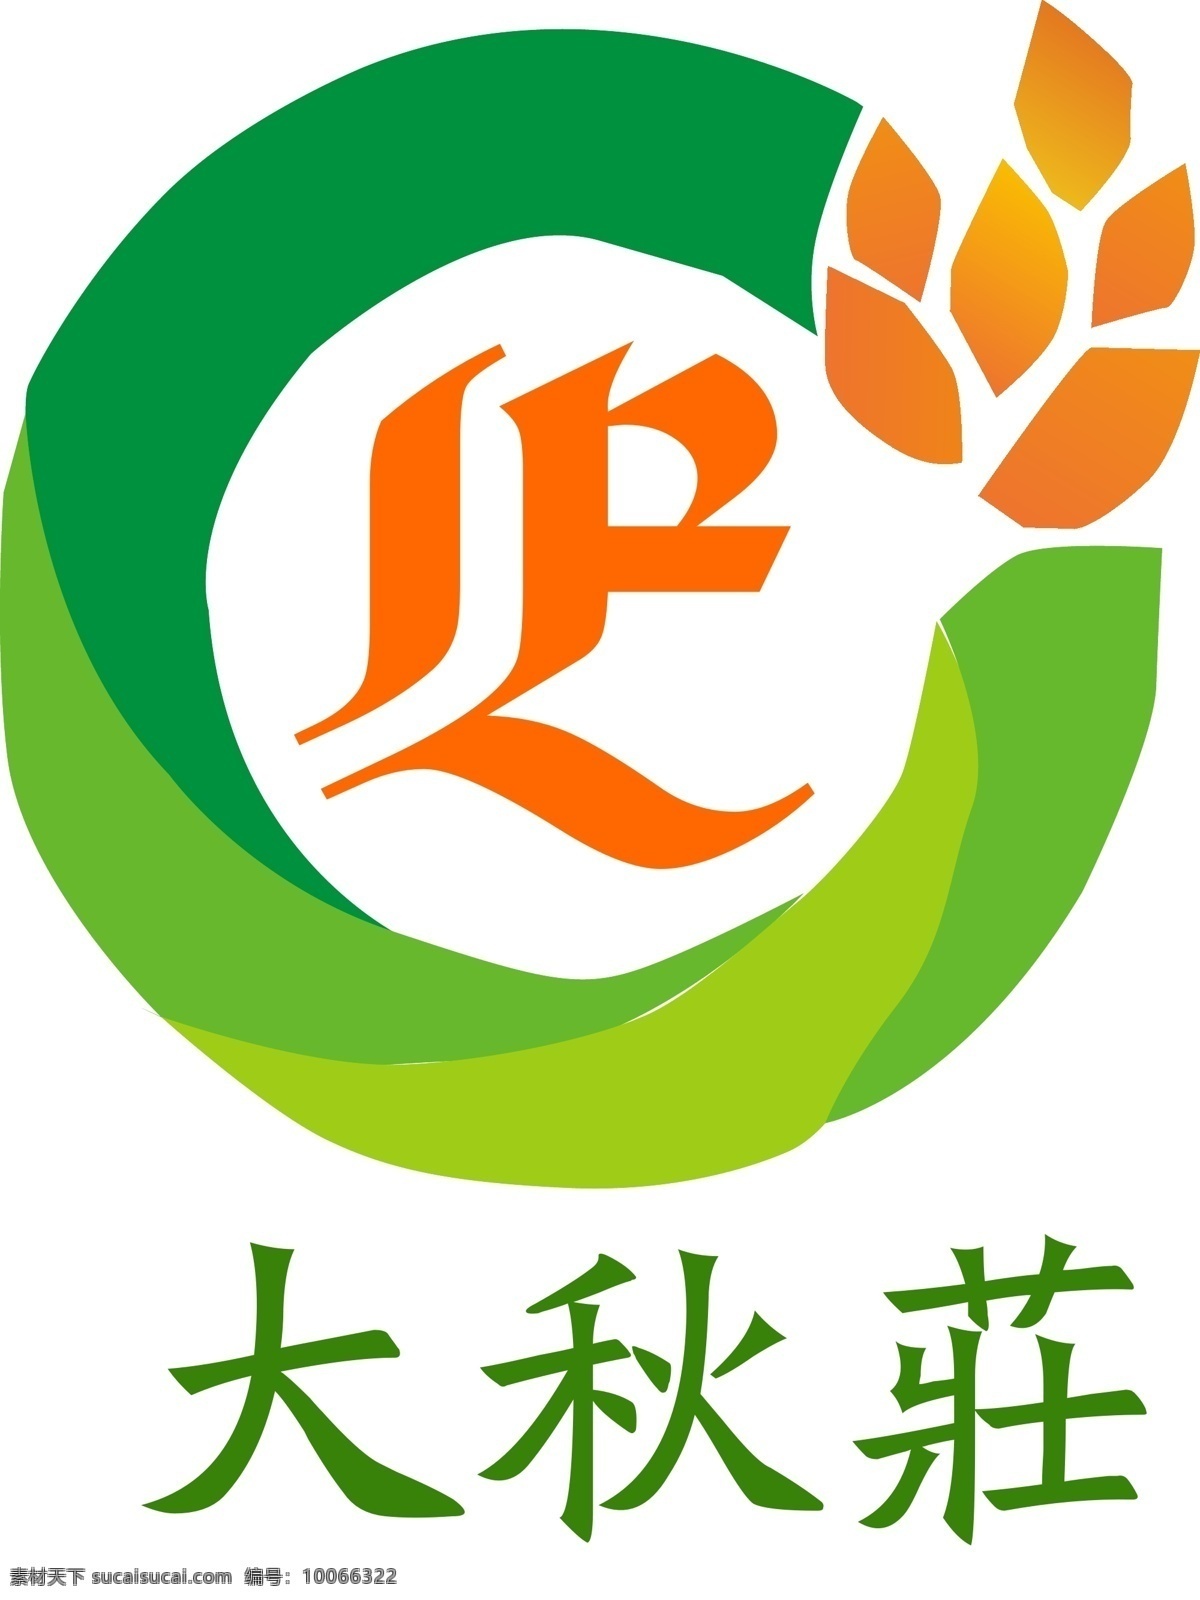 大秋 庄 logo1 大秋庄 农业 饮食 产业 一体 的平台 白色